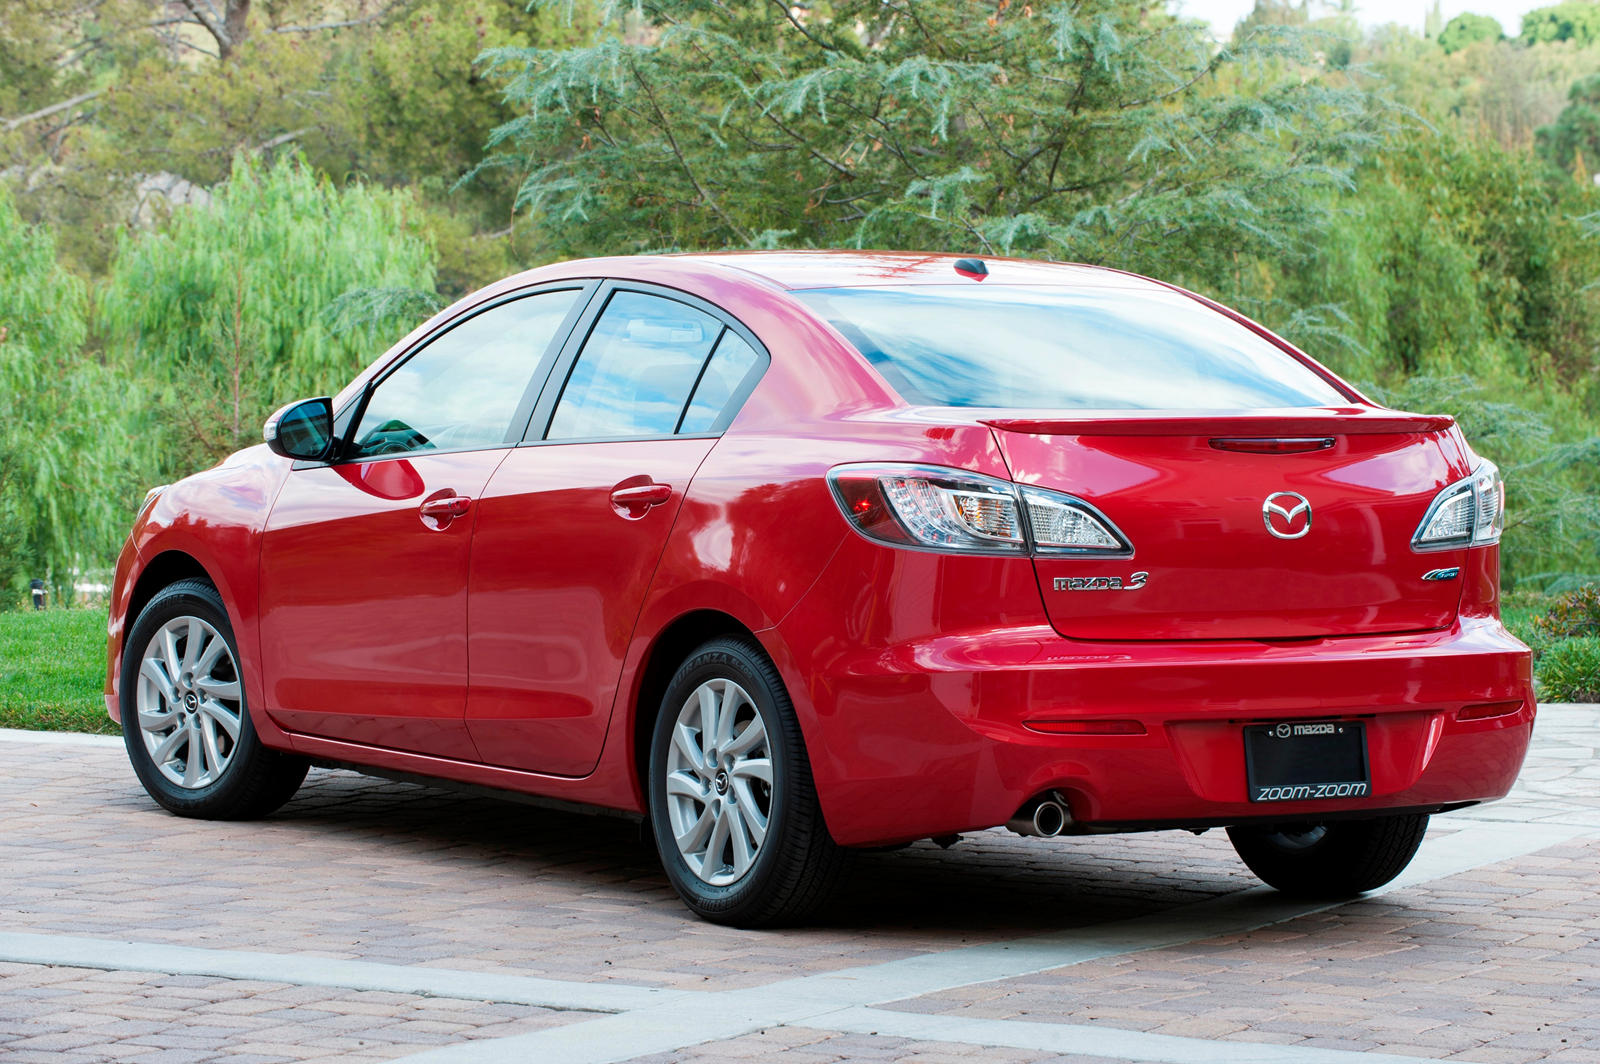 2013 Mazda 3 Sedan Rear View